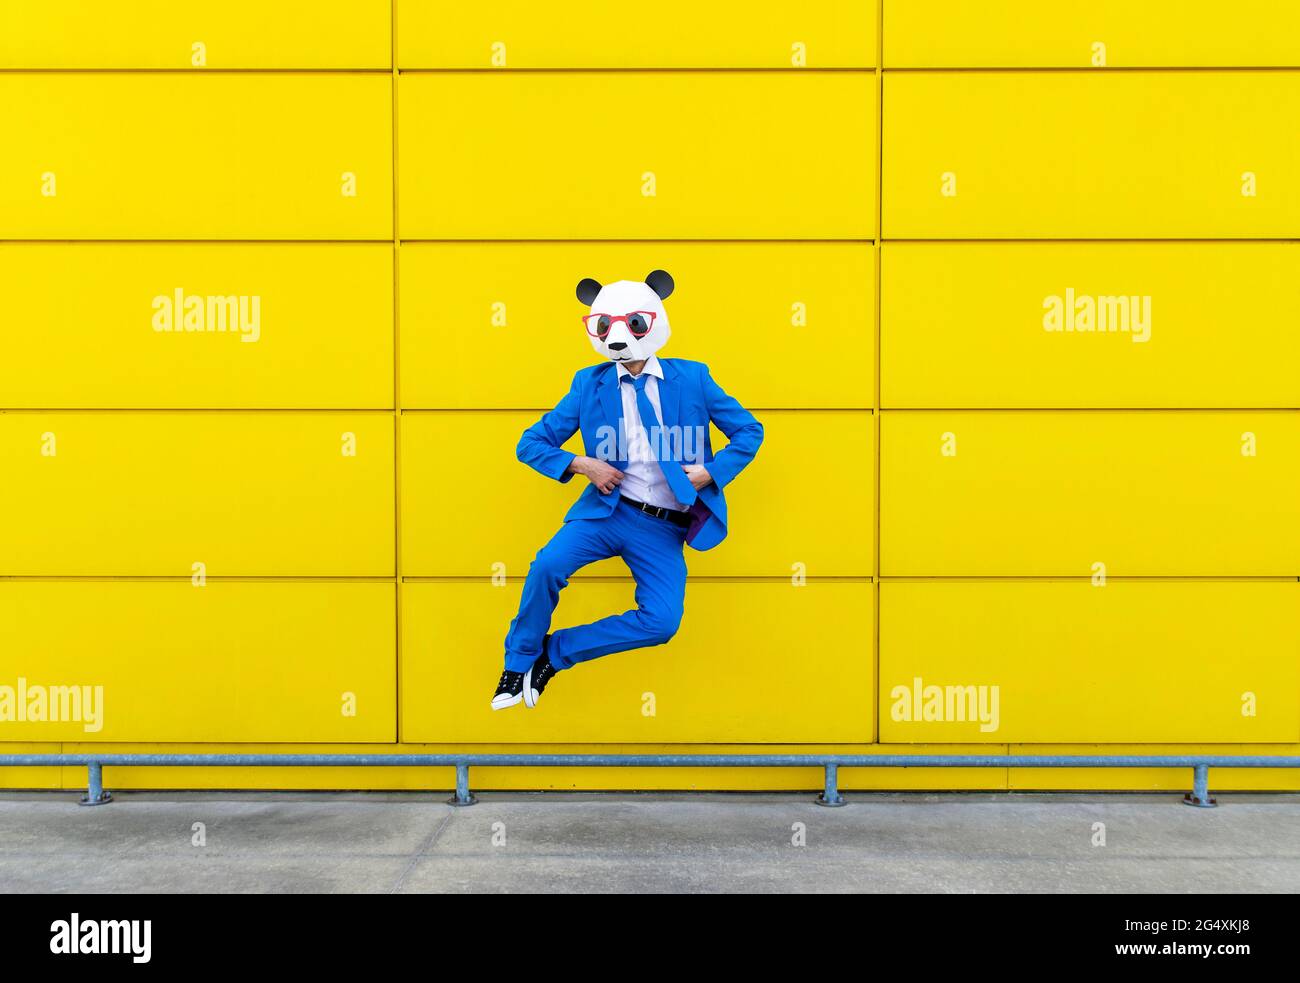 Homme portant un costume bleu vif et un masque de panda sautant contre le mur jaune Banque D'Images